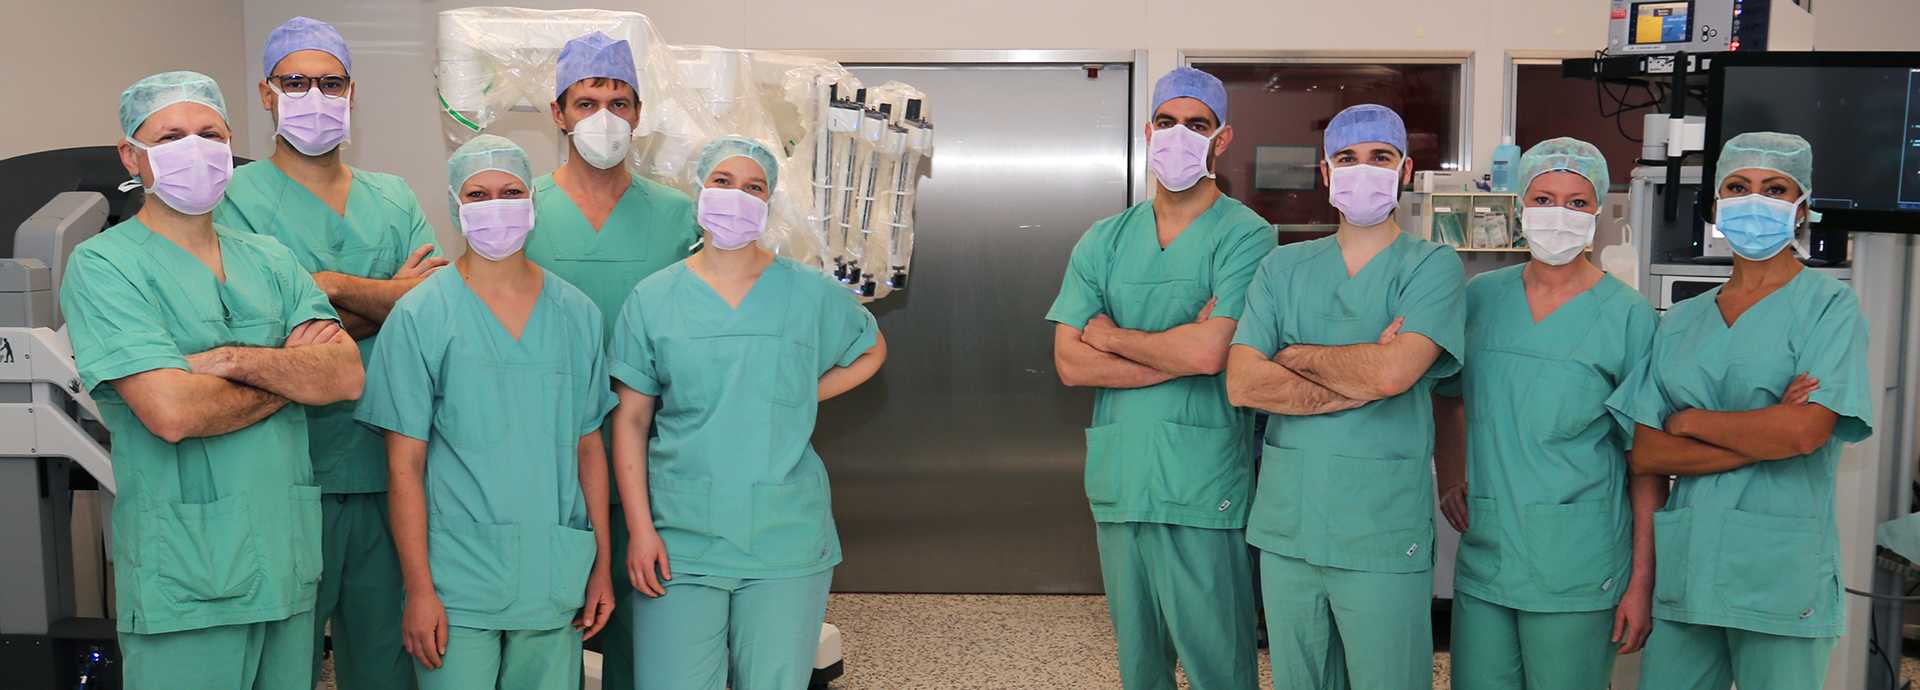 OP-Team der Urologie mit dem DaVinci-System